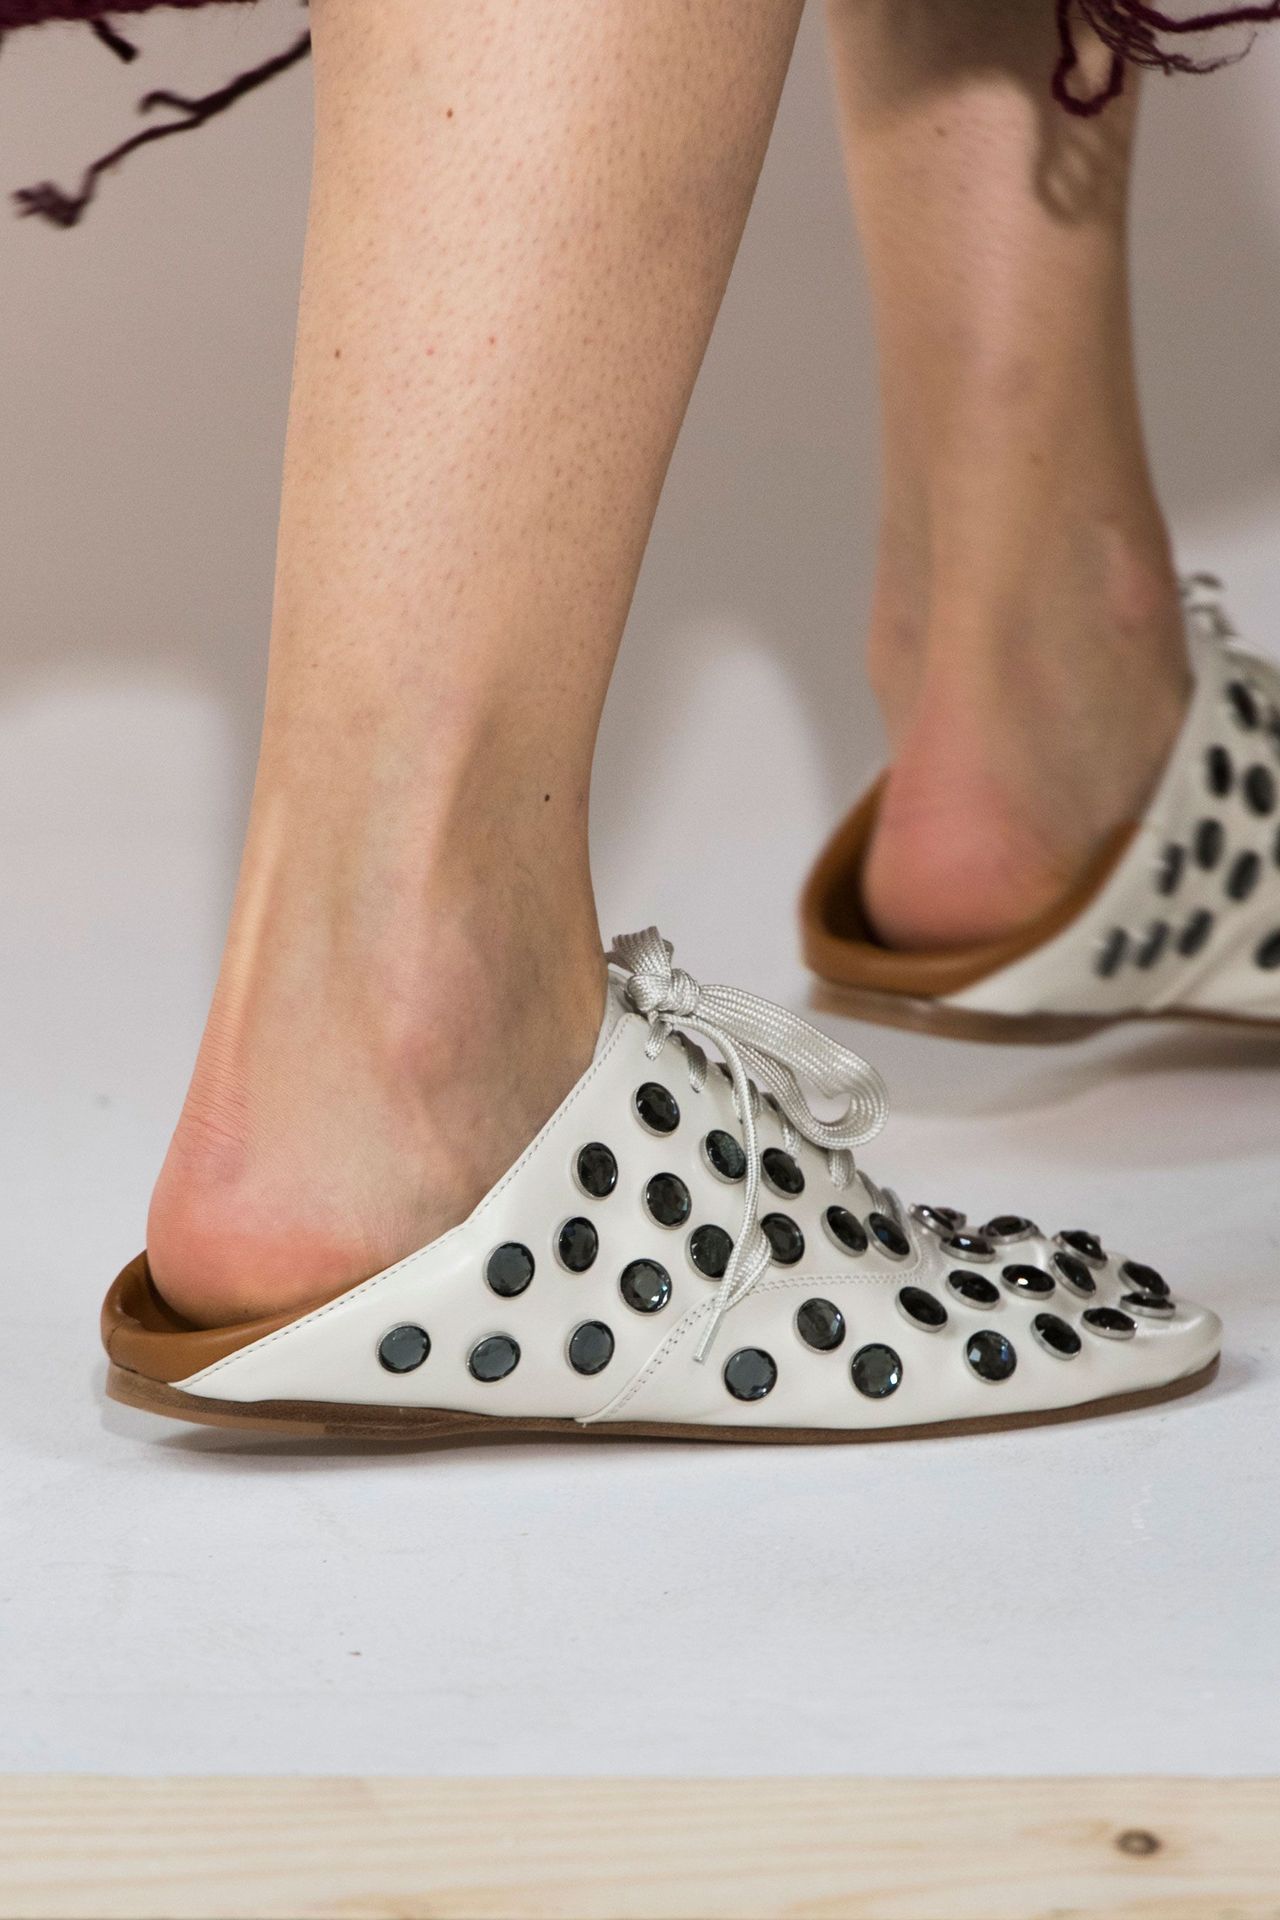 Botas Rockeras Zapatos De Moda Para Mujer Bajitos 37